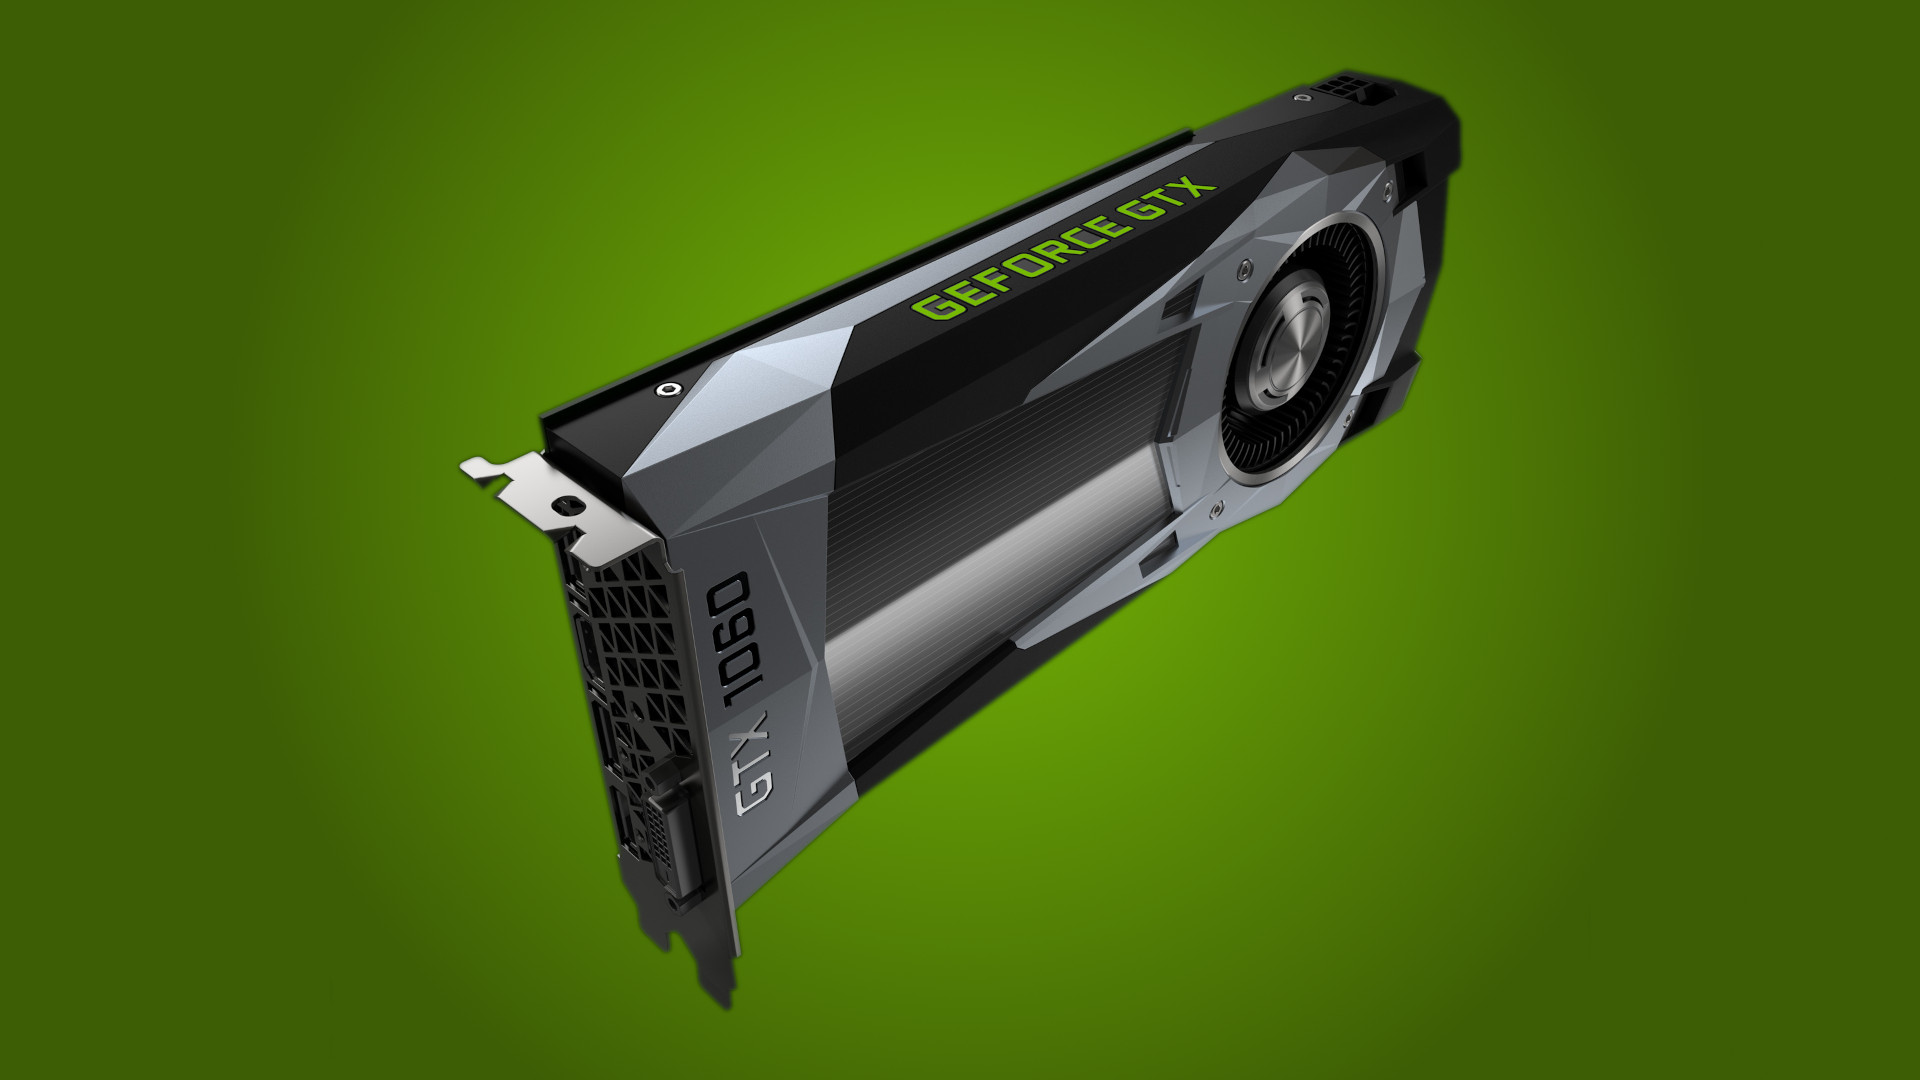 De GeForce GTX 1060 Founders Edition grafische kaart, op een tweekleurige groene achtergrond